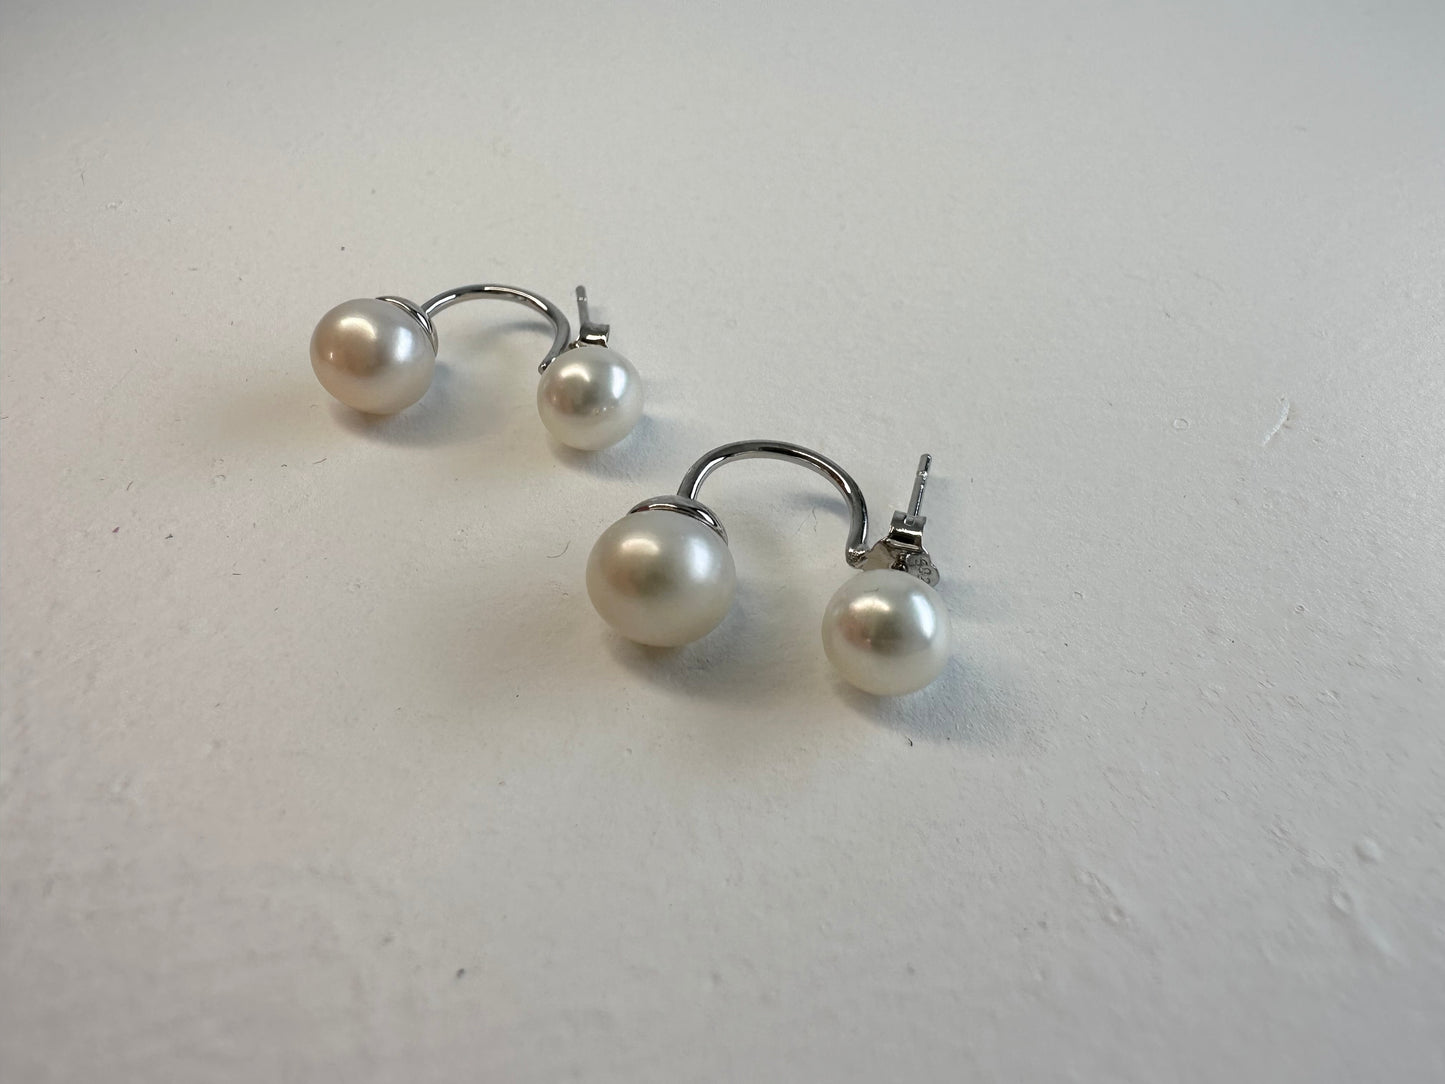 Double pearl Betty earrings